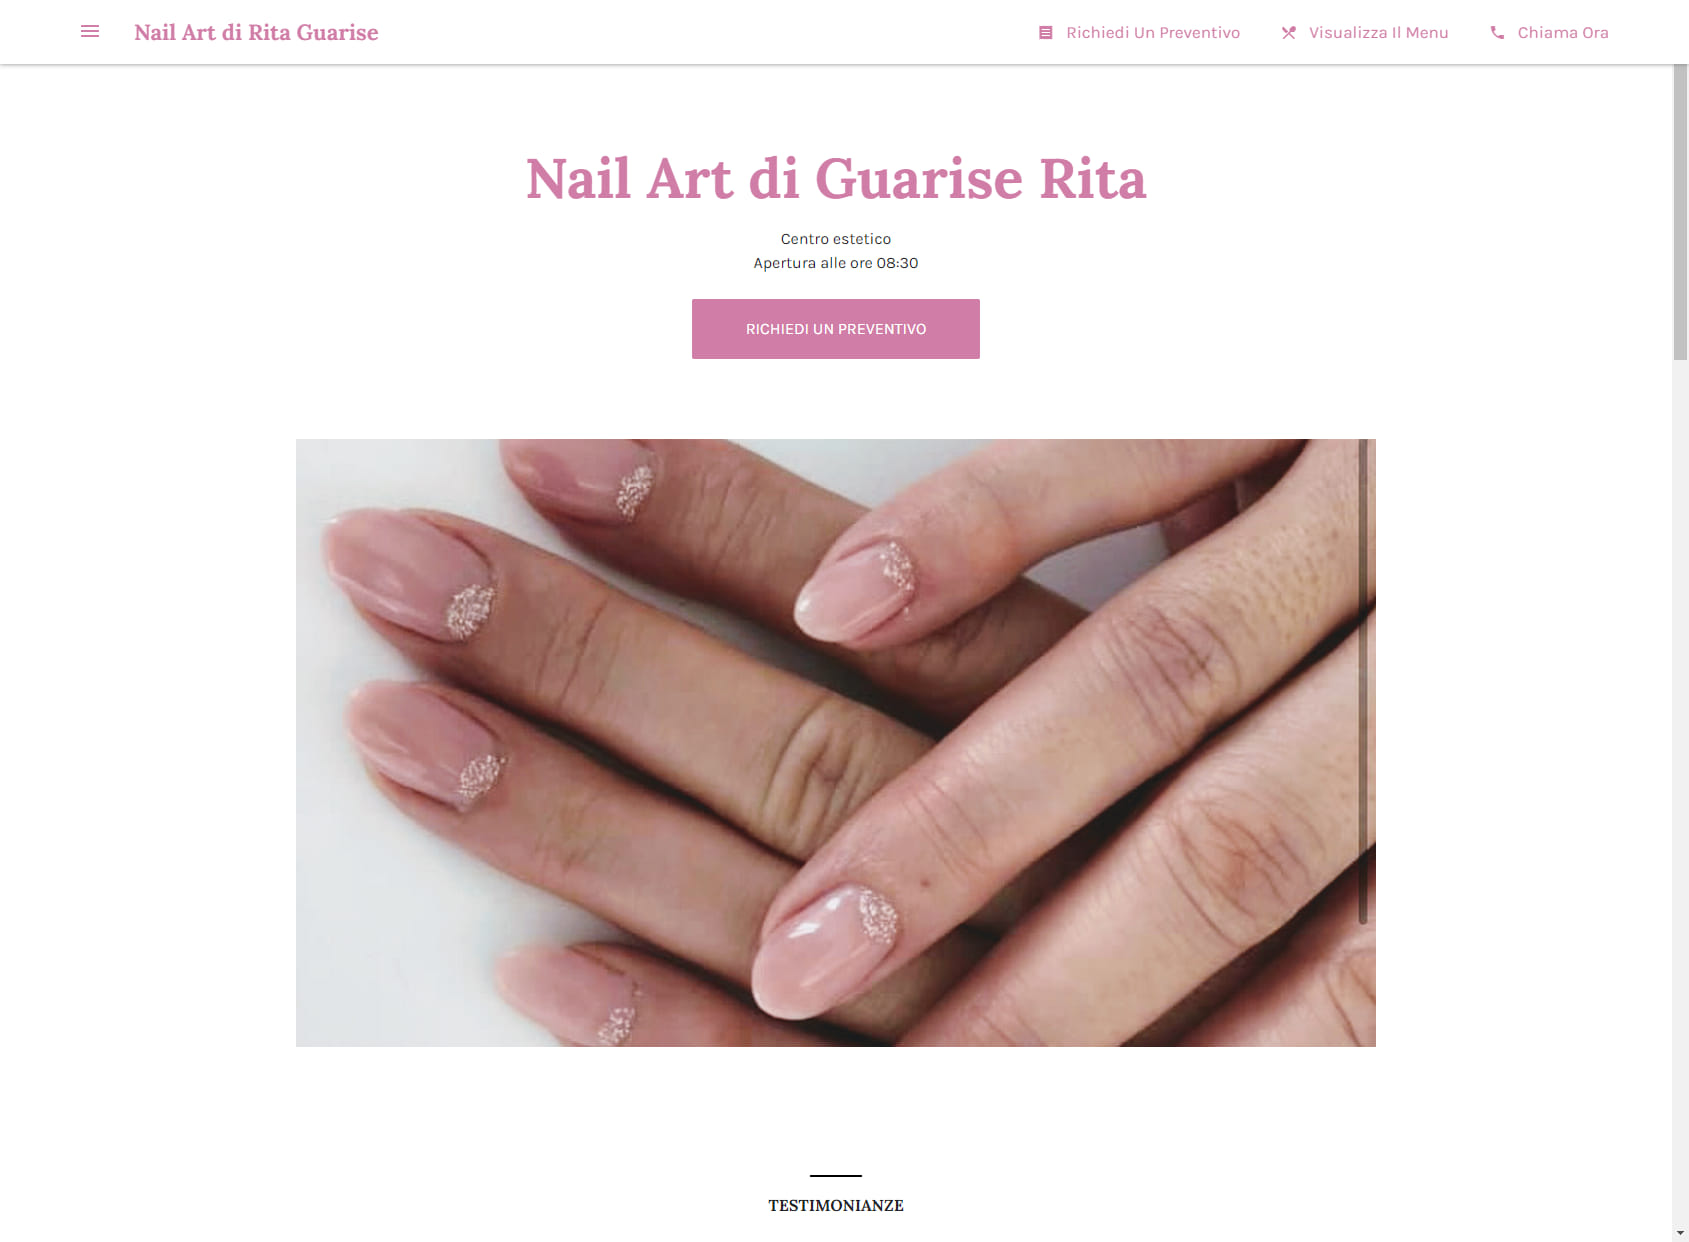 Nail Art di Rita Guarise